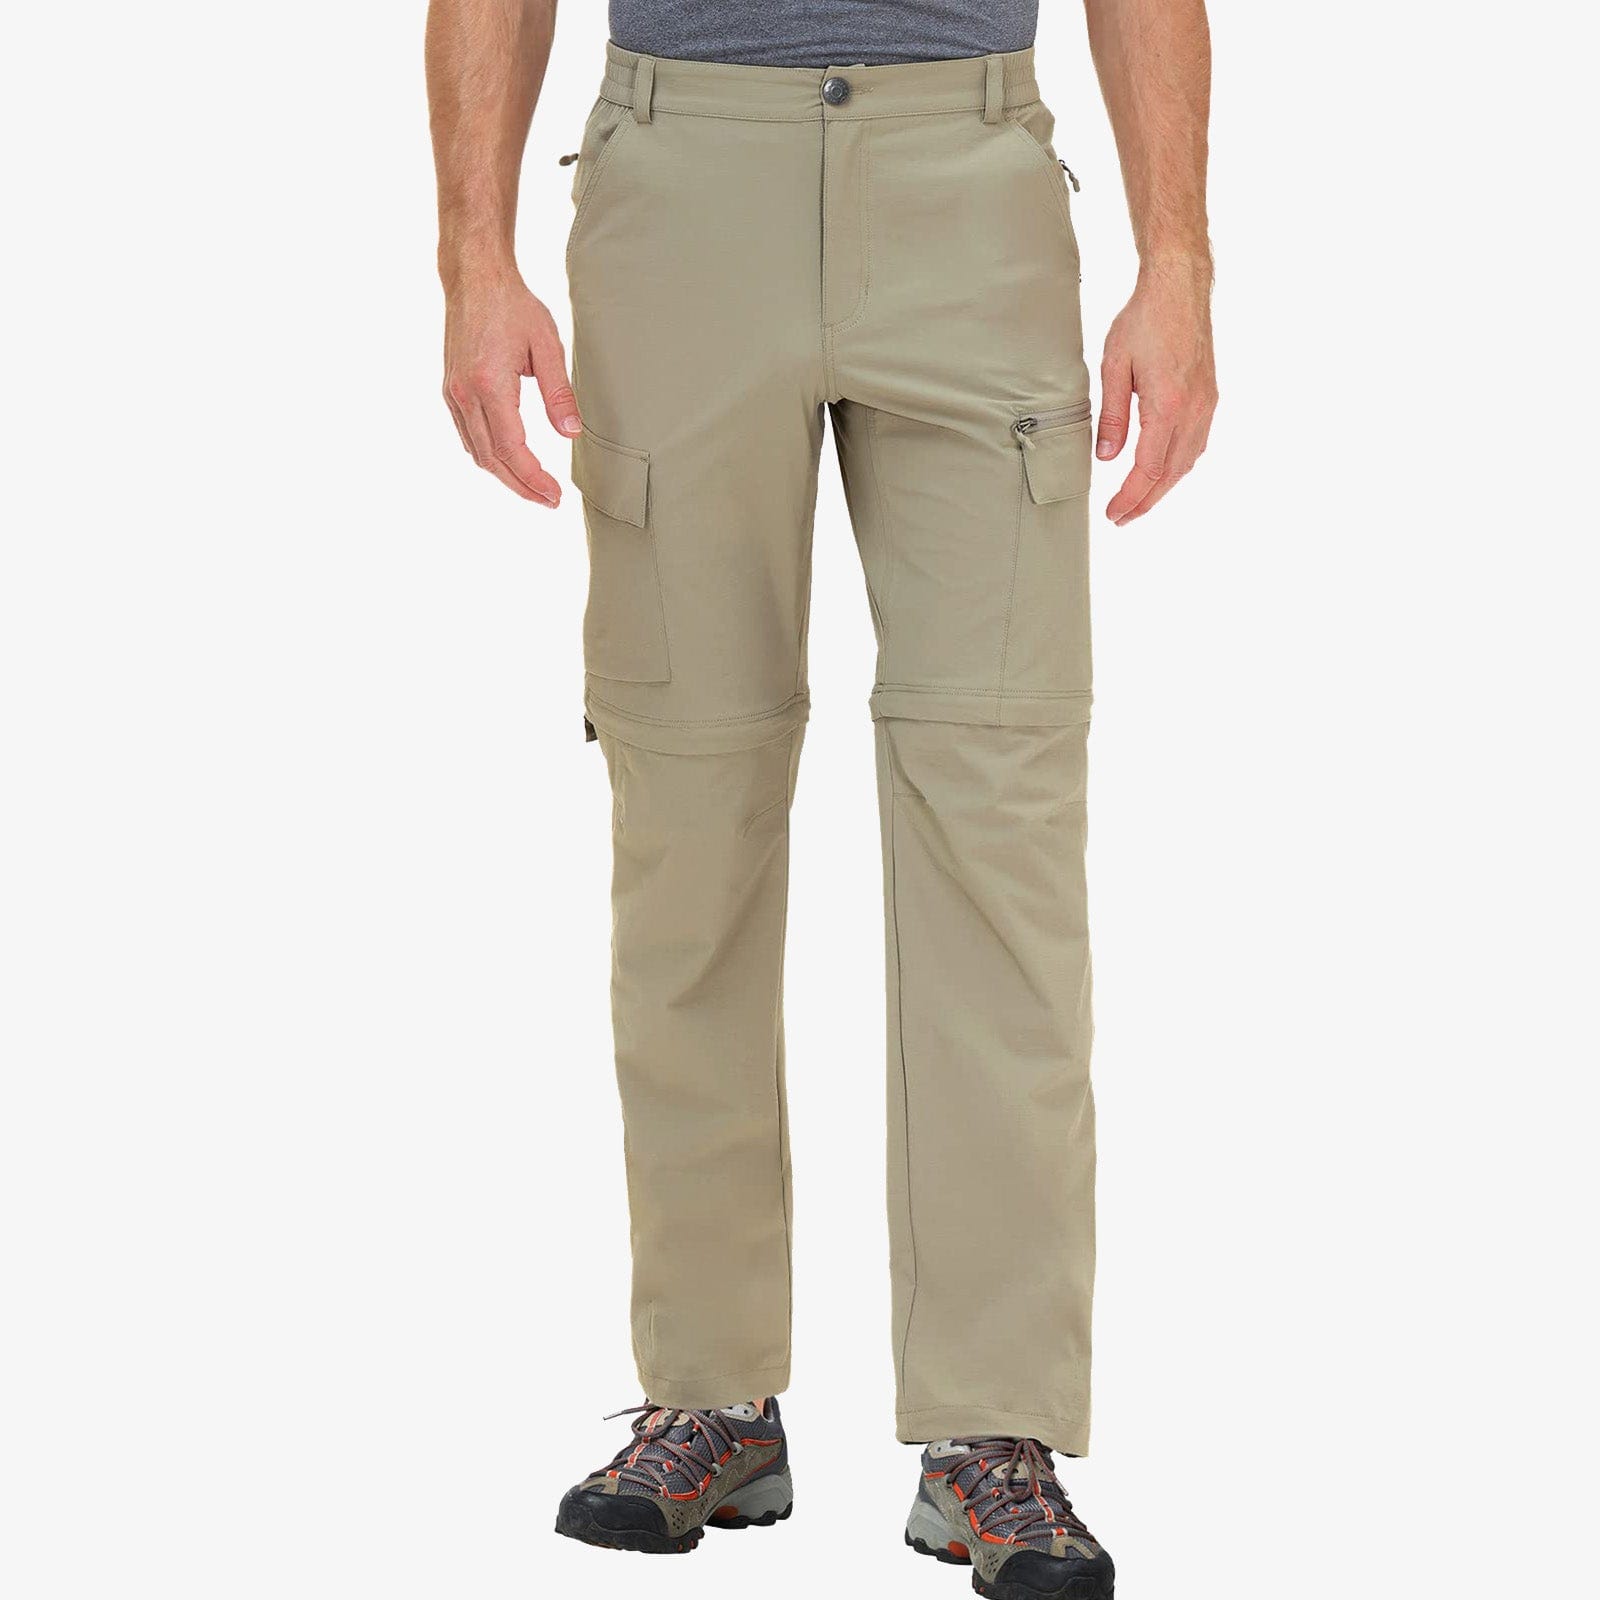 Men's Convertible Hiking Pants Zip Off Quick Dry Cargo Pants - Rock Grey /  30